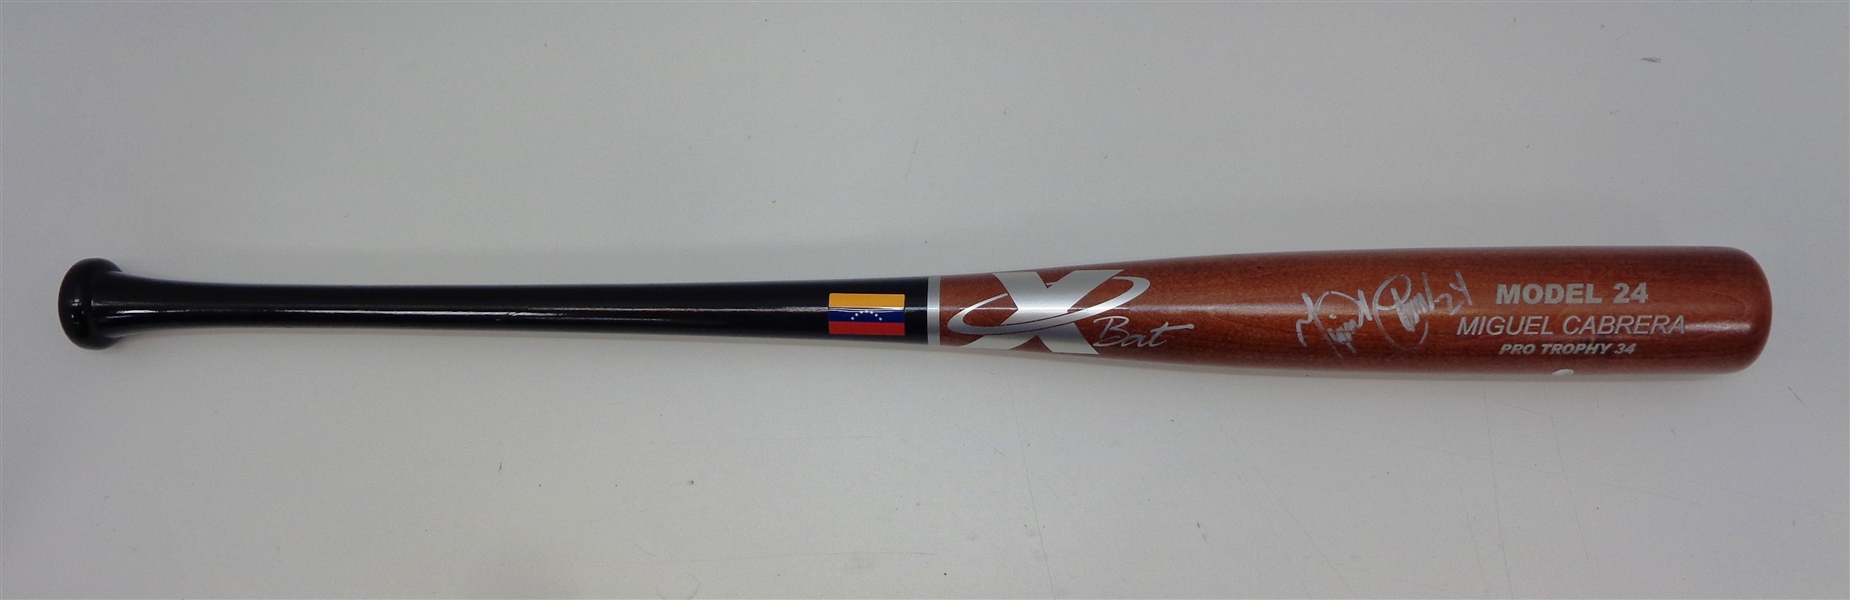 Miguel Cabrera Autographed X Bat w/ Venezuela Flag